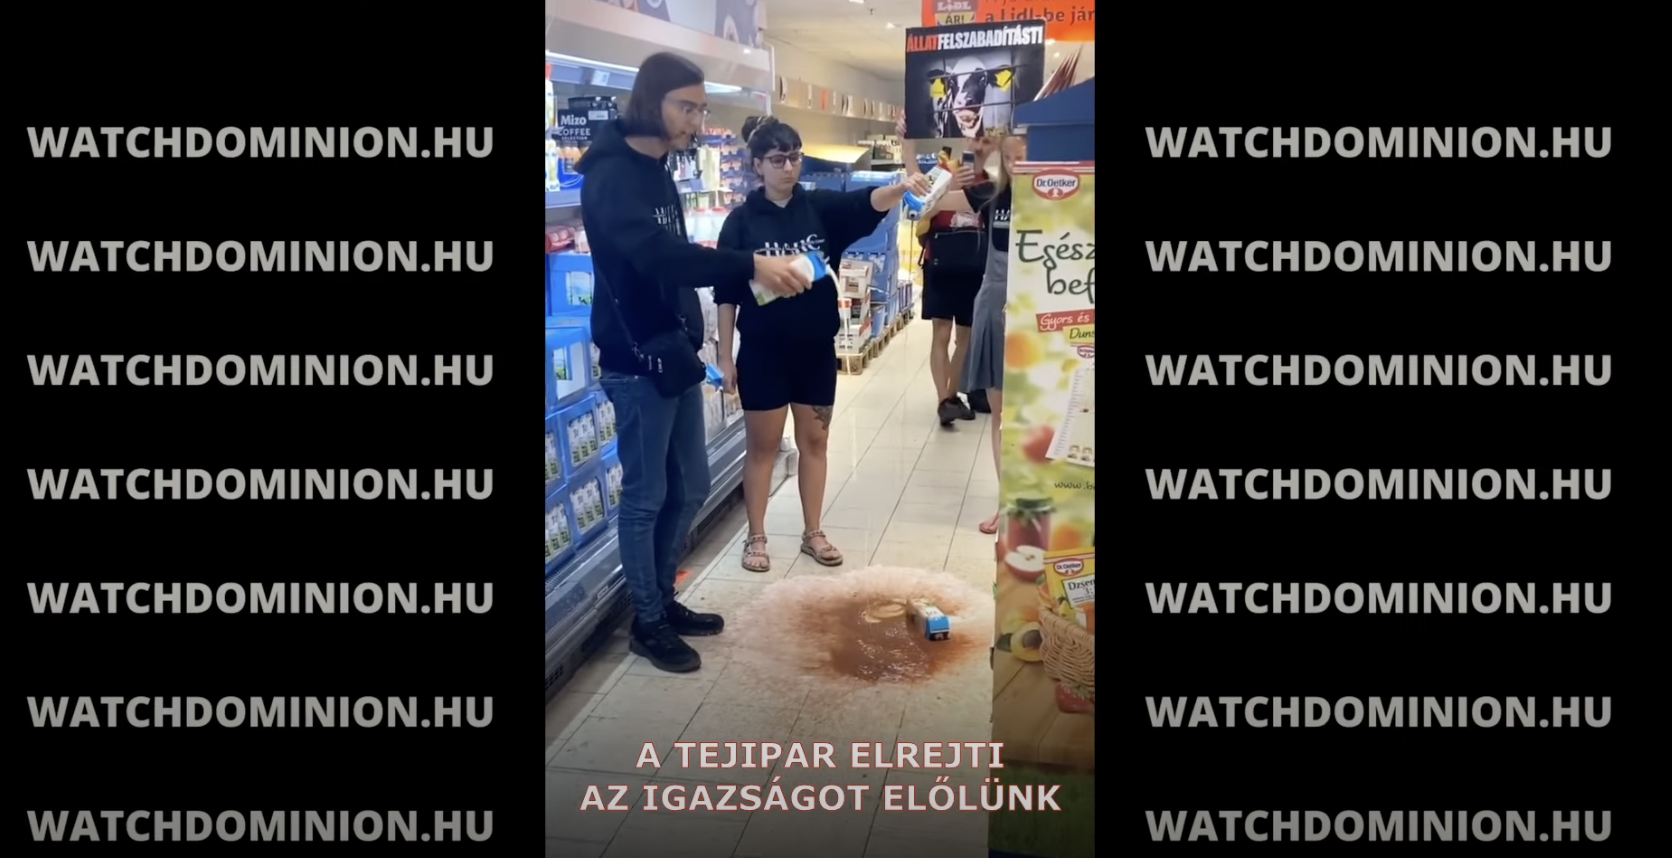 Magyar vegán aktivisták tejjel locsolták fel egy Lidl padlóját a tej világnapján